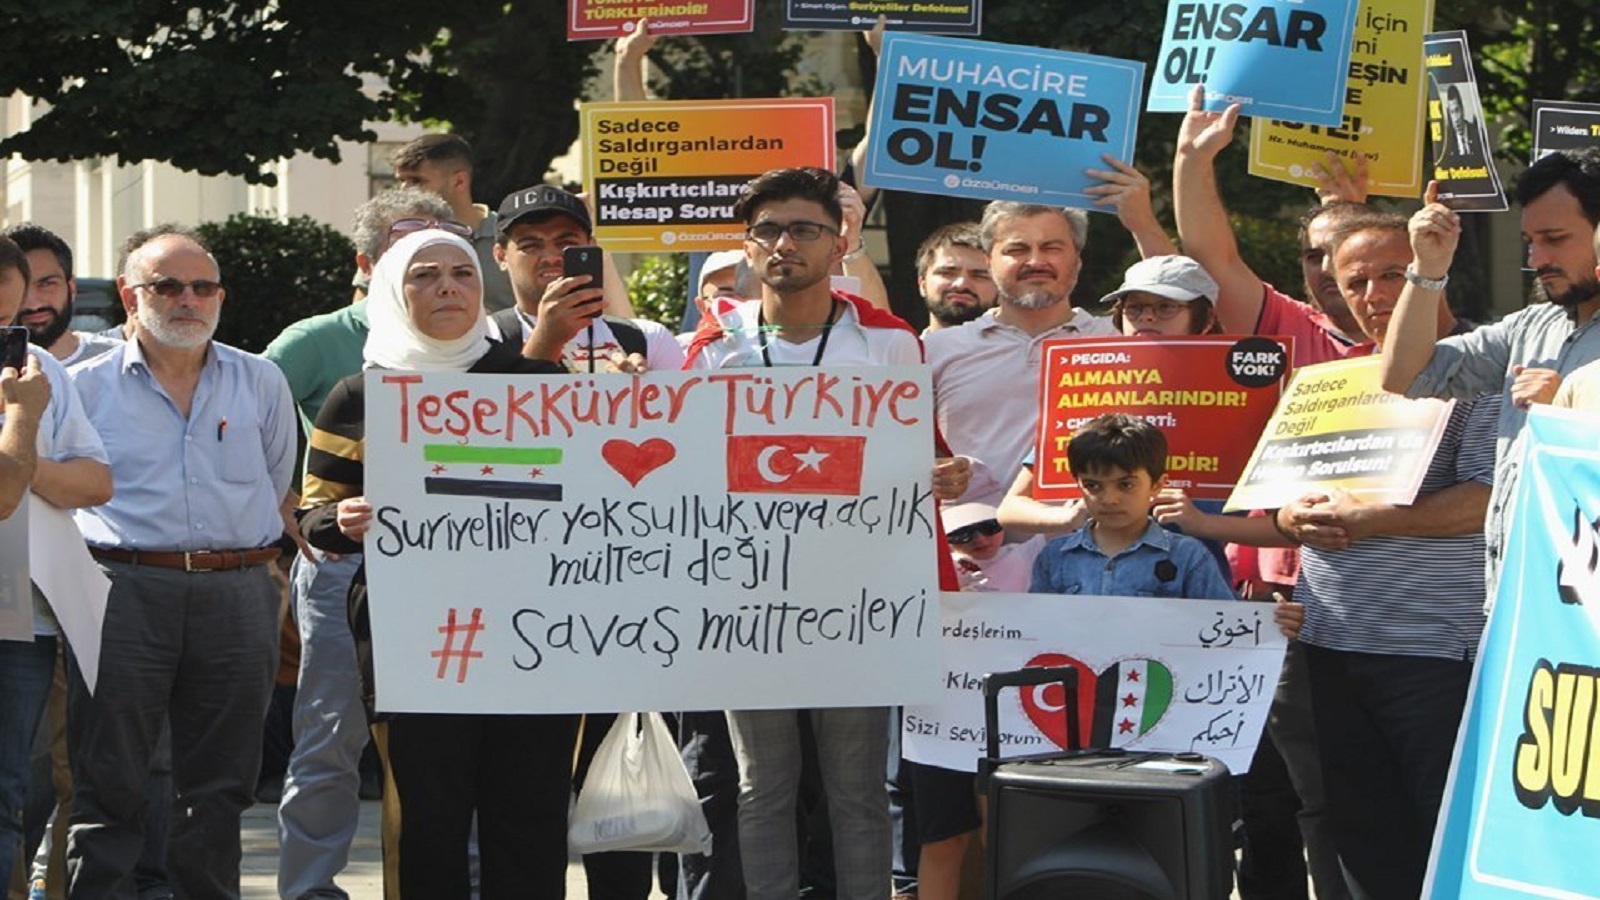 "لا تلمس أخي": أتراك يتصدّون للعنصرية ضد السوريين